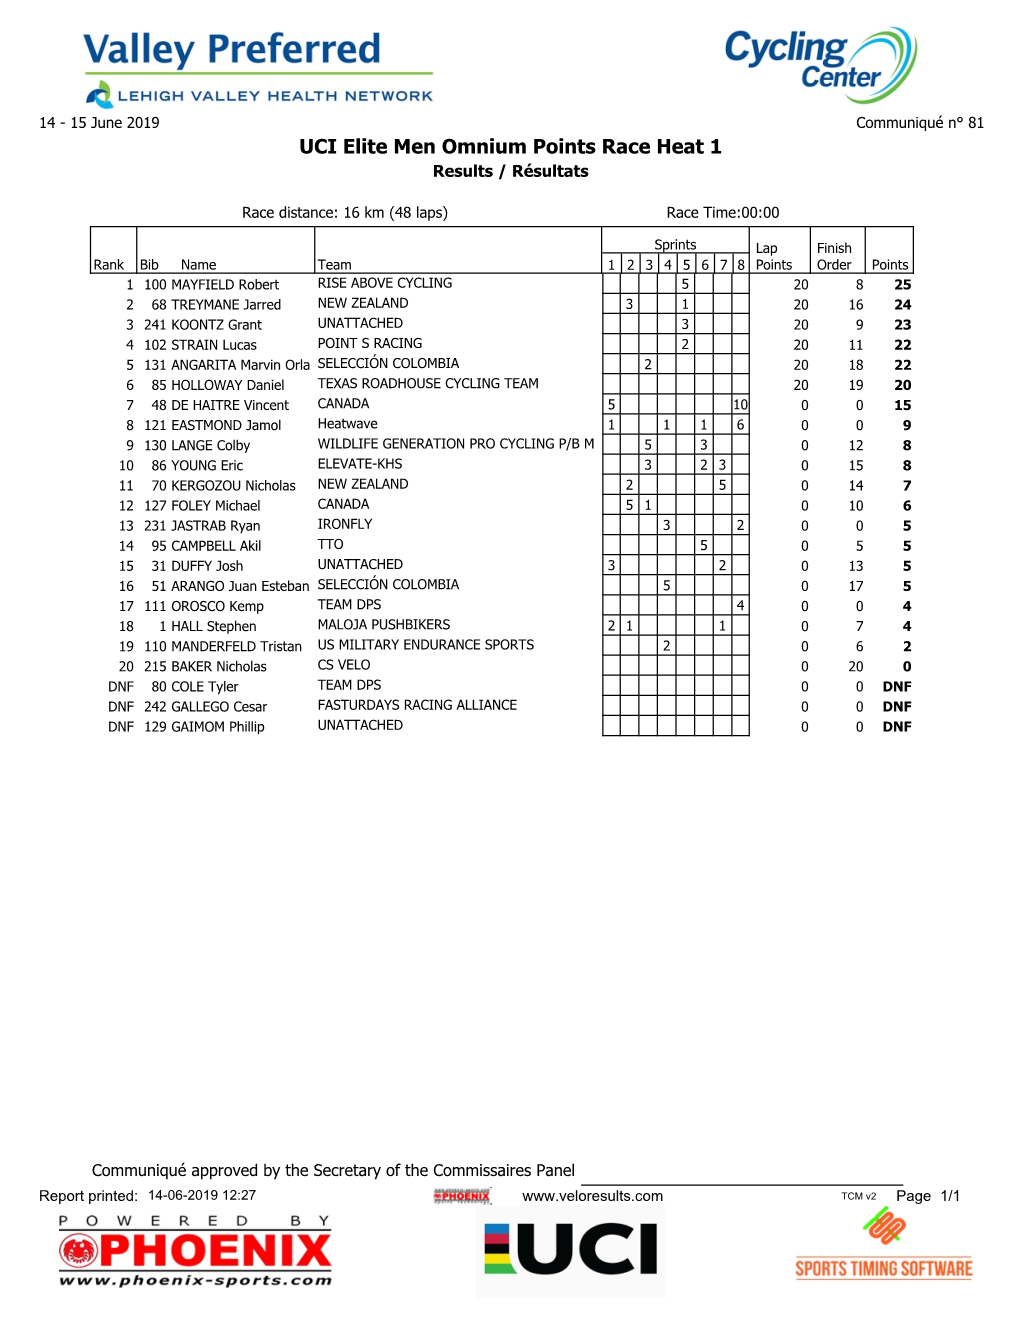 UCI Elite Men Omnium Points Race Heat 1 Results / Résultats